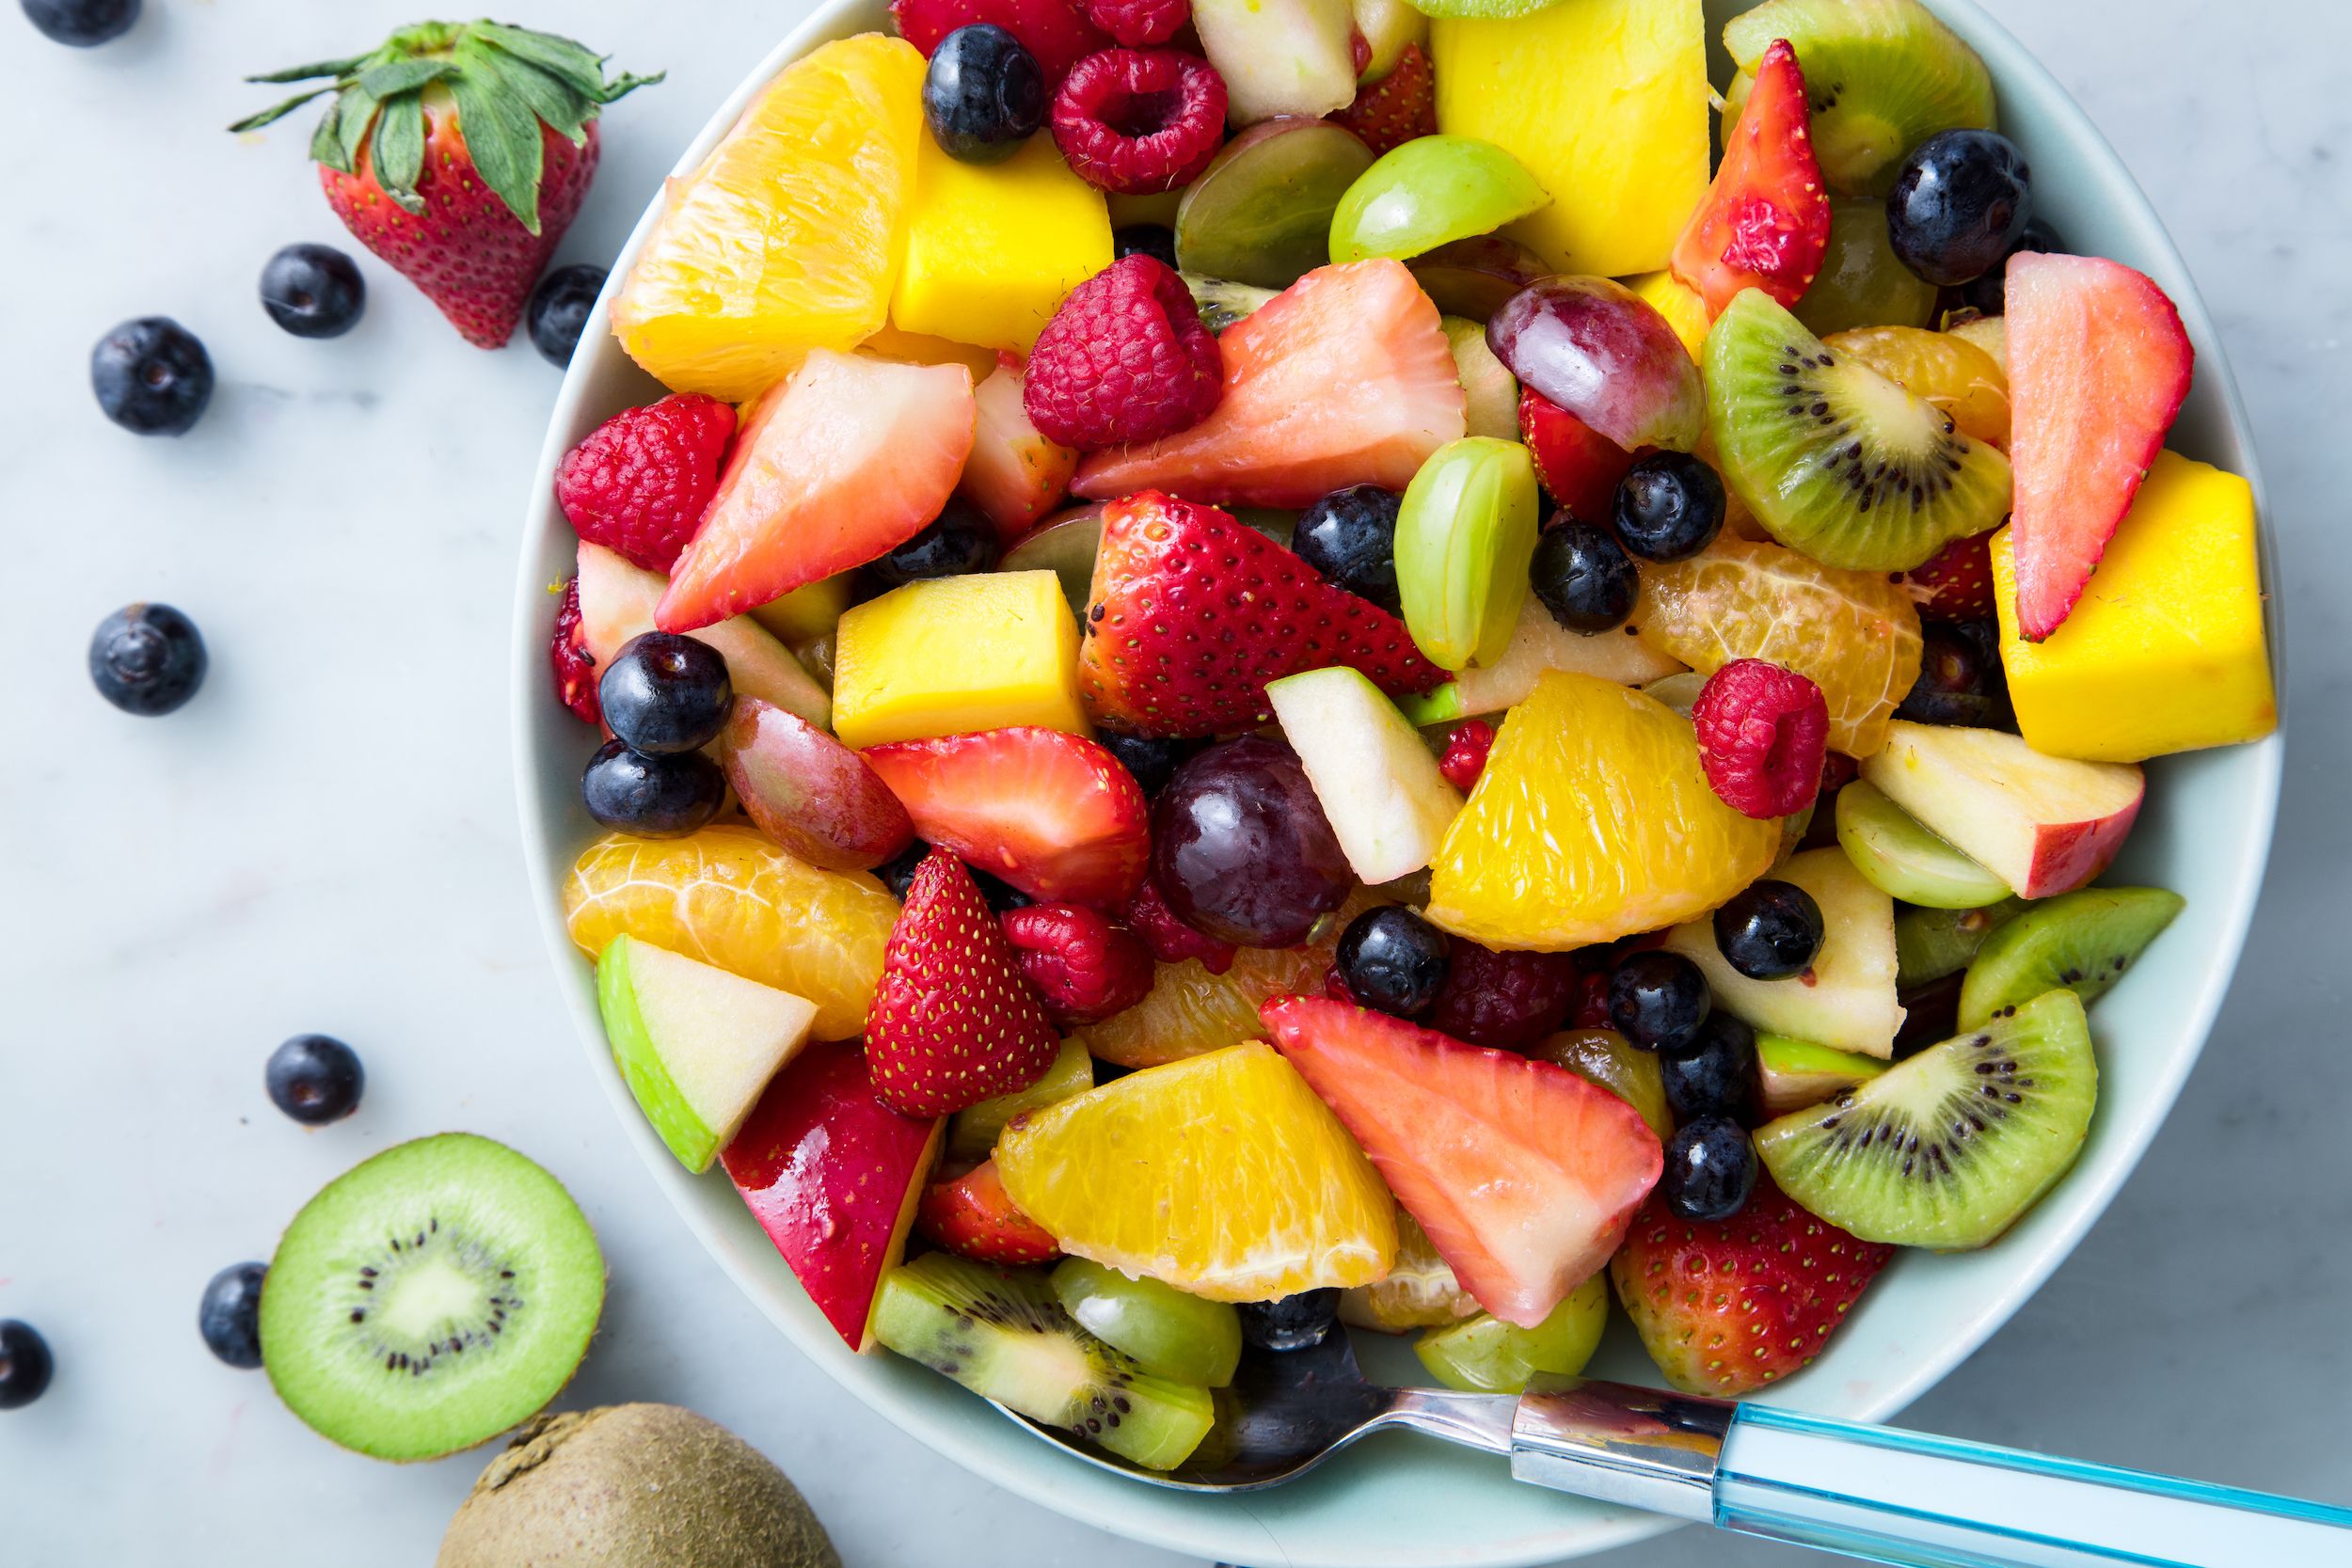 Eat Fruit Salad in Breakfast